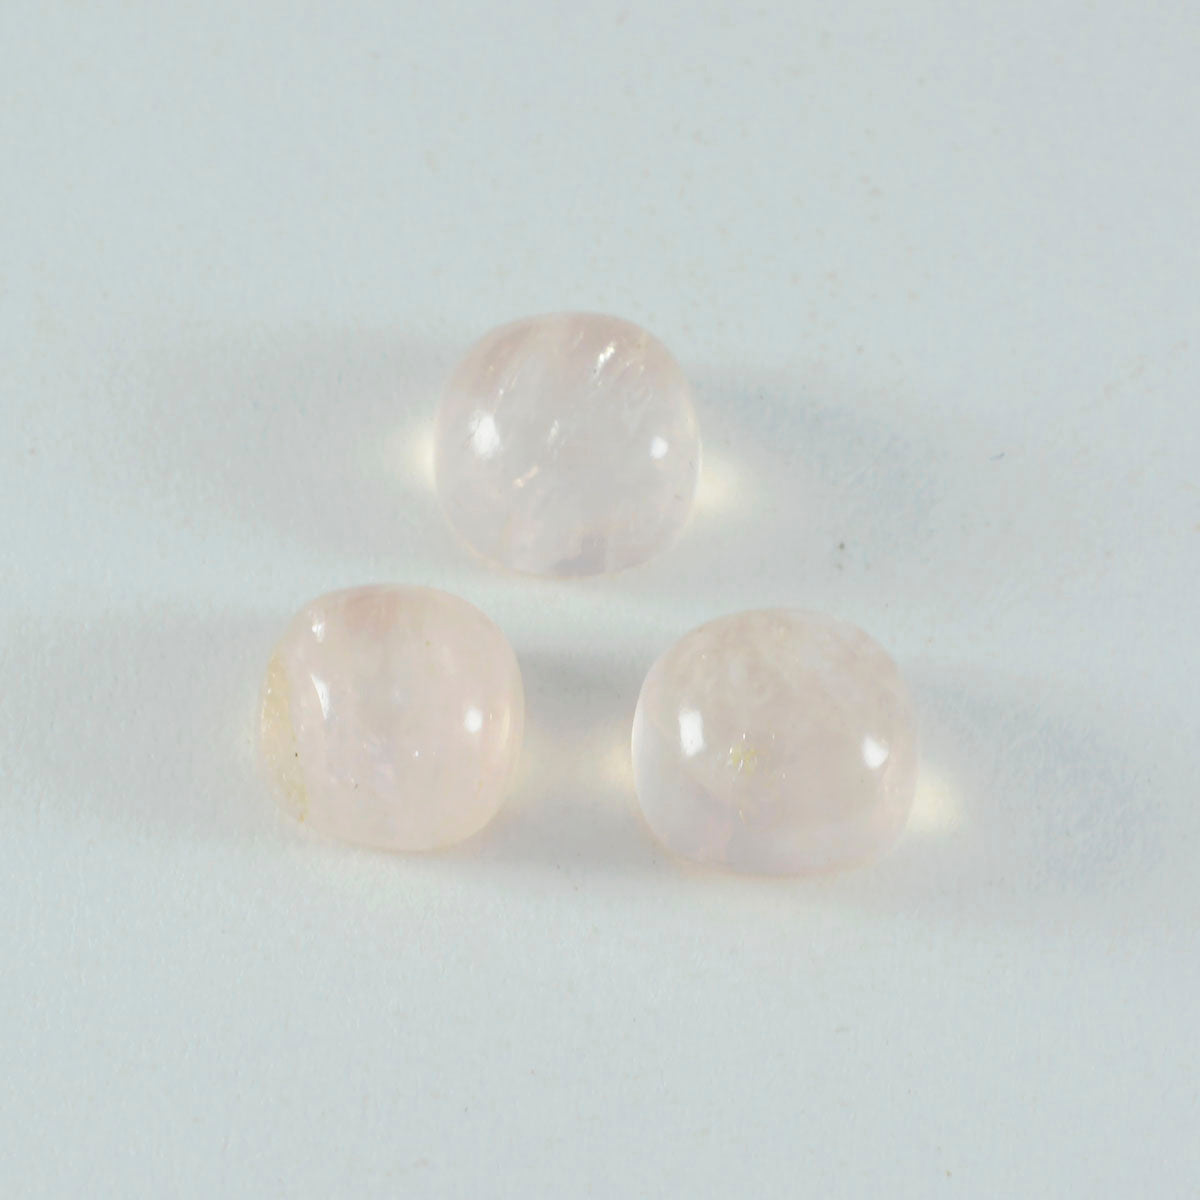 riyogems 1 шт. кабошон из розового кварца 5x5 мм в форме подушки A + качественные драгоценные камни